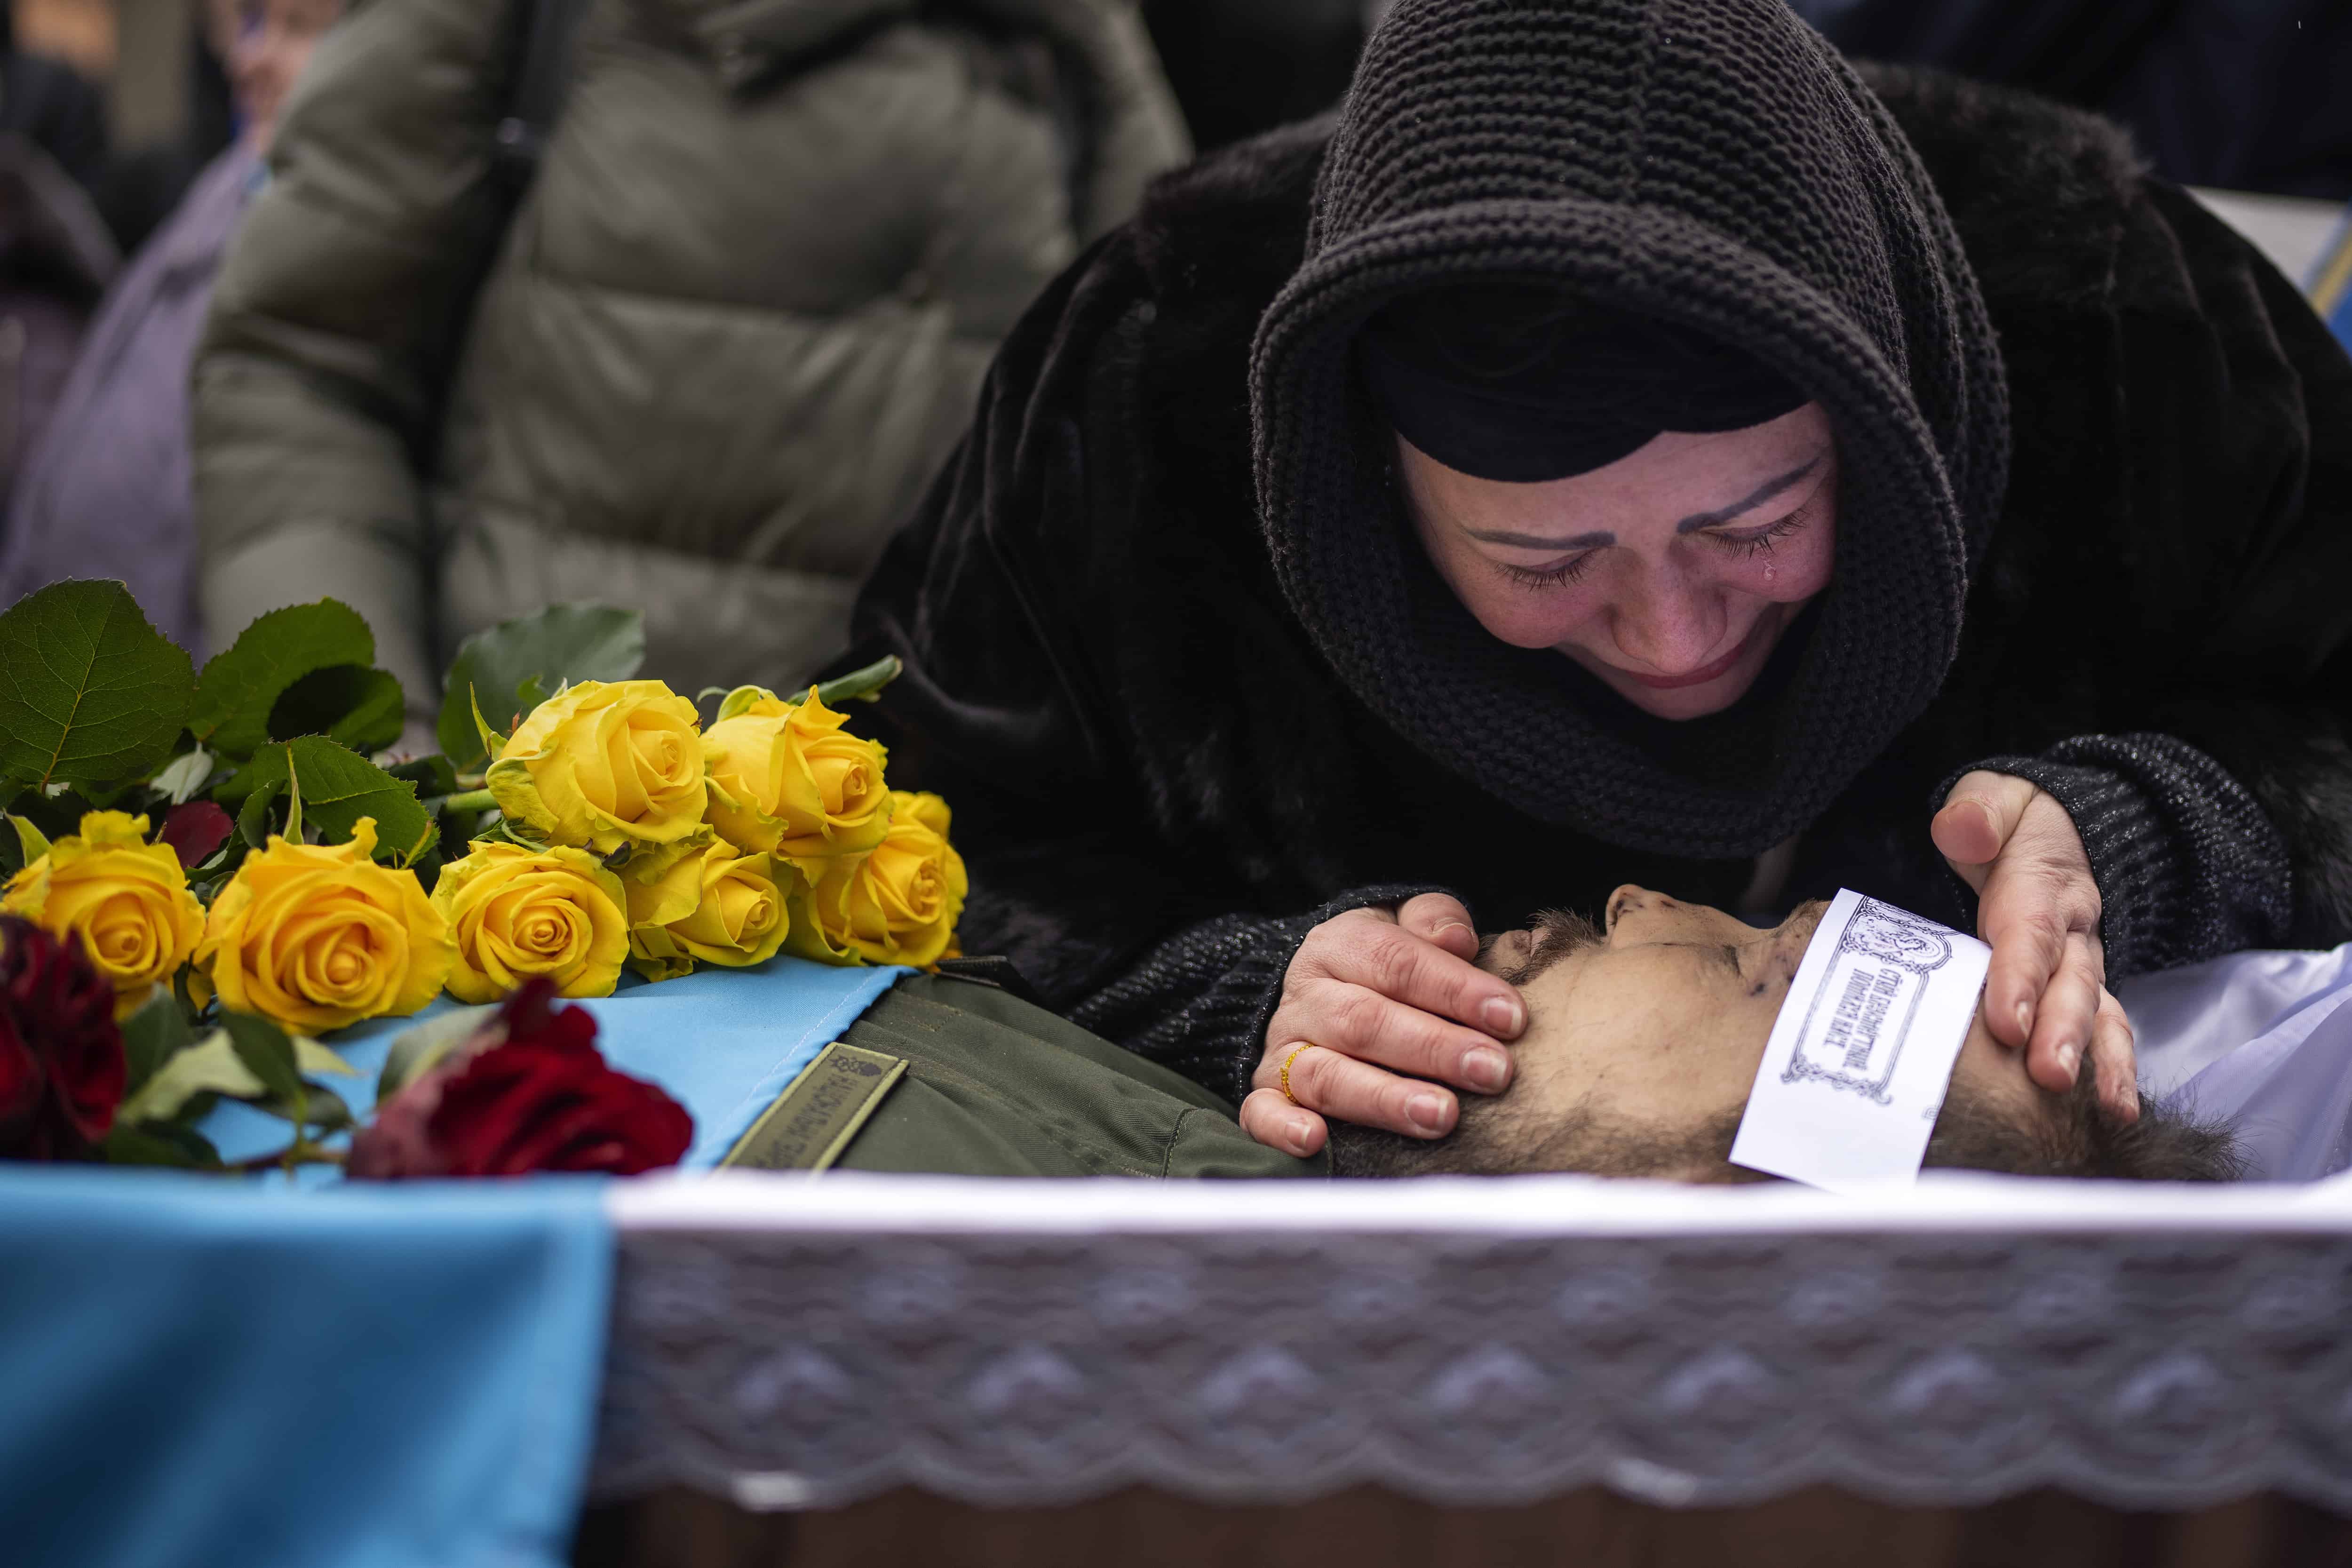 Roza llora sobre el cuerpo de su esposo Oleksandr Maksymenko, de 38 años, durante su funeral en su pueblo natal Kniazhychi, al este de Kyiv, Ucrania, el lunes 13 de febrero de 2023. Oleksandr, un civil que fue voluntario en las fuerzas armadas de Ucrania, murió en los combates en el área de Bakhmut.